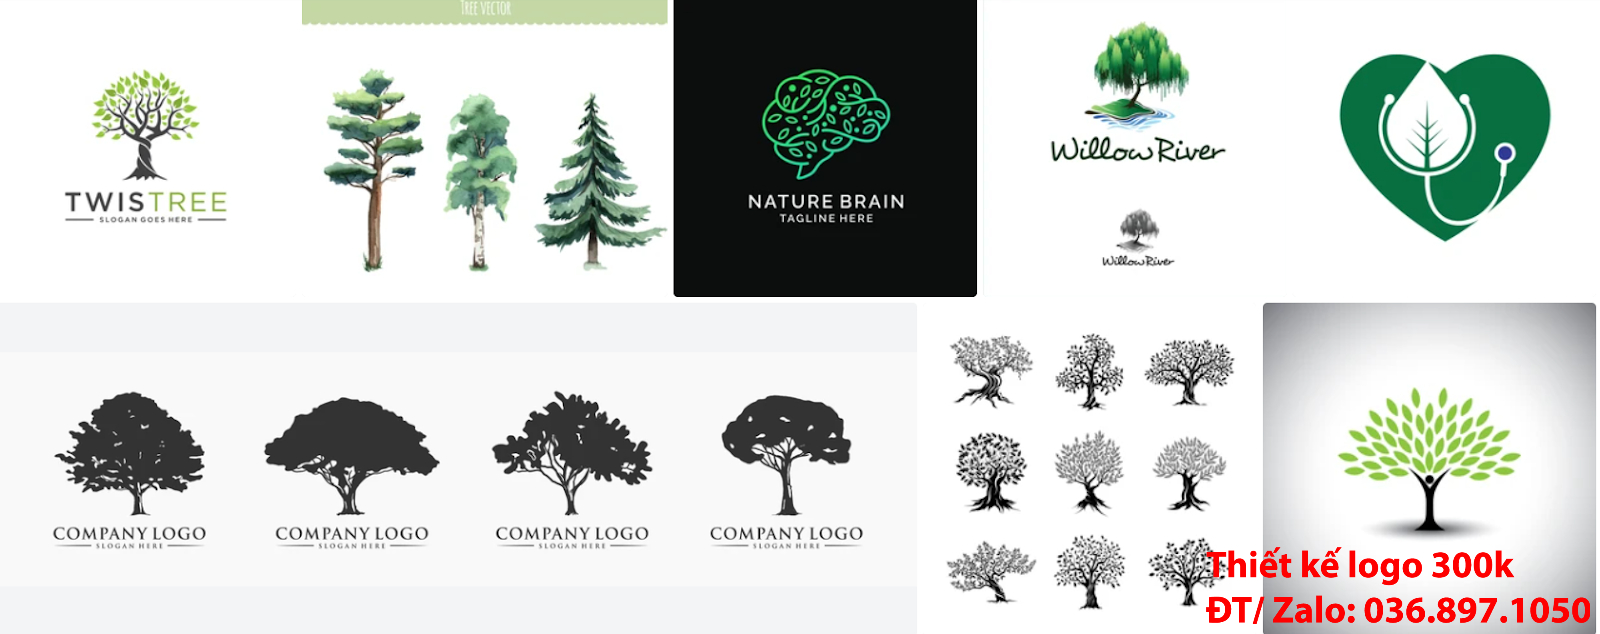 Dịch vụ có nhận làm lô gô với Ý nghĩa logo cây xanh độc đáo online giá rẻ đẹp chuyên nghiệp chất lượng 300k - 500k